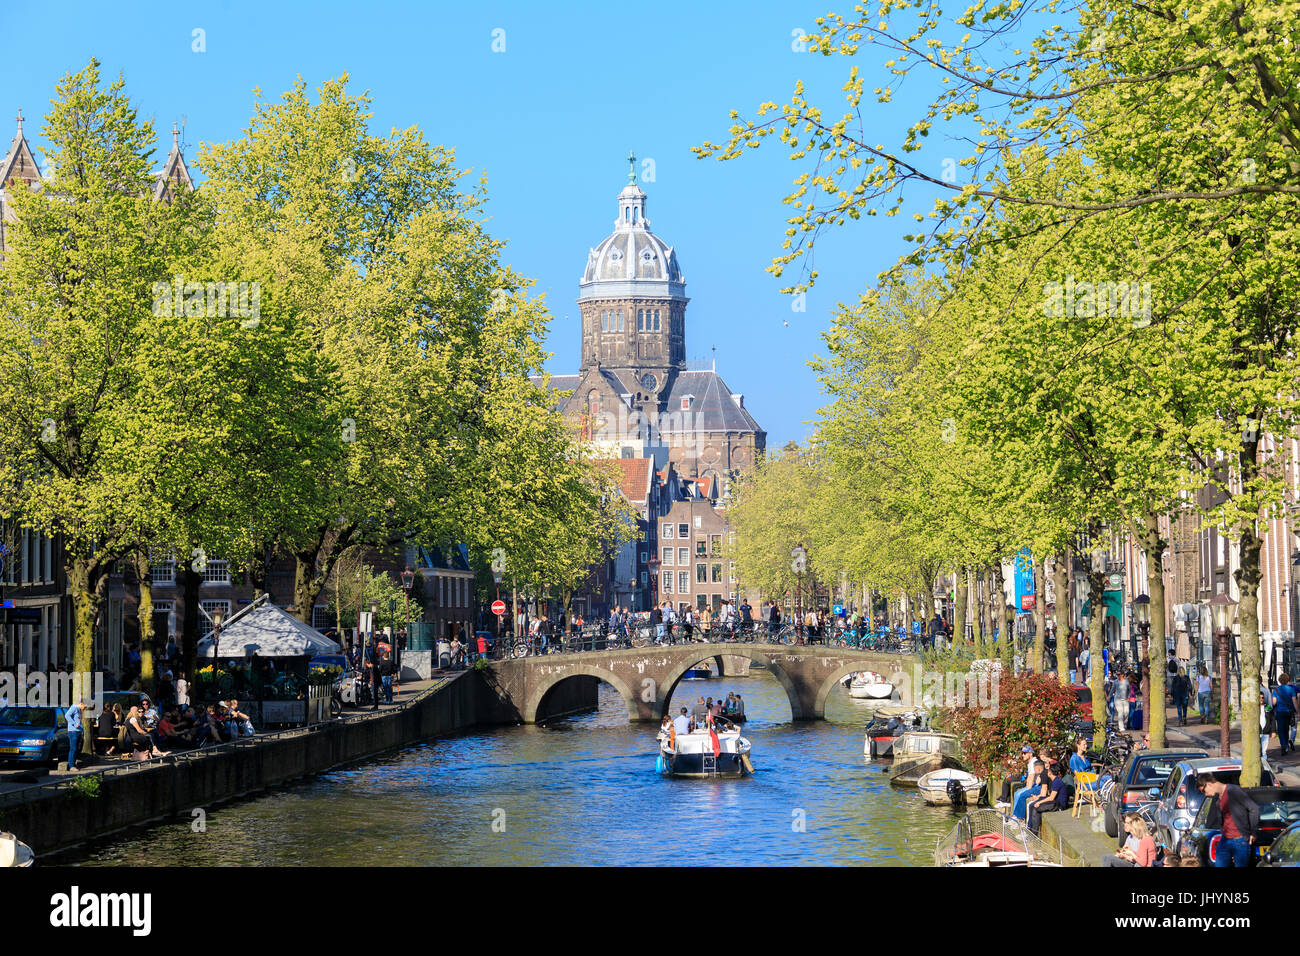 Die alte Kirche (Oude Kerk) eingerahmt von Booten und Brücken in einem Kanal des Flusses Amstel, Amsterdam, Holland (Niederlande) Stockfoto